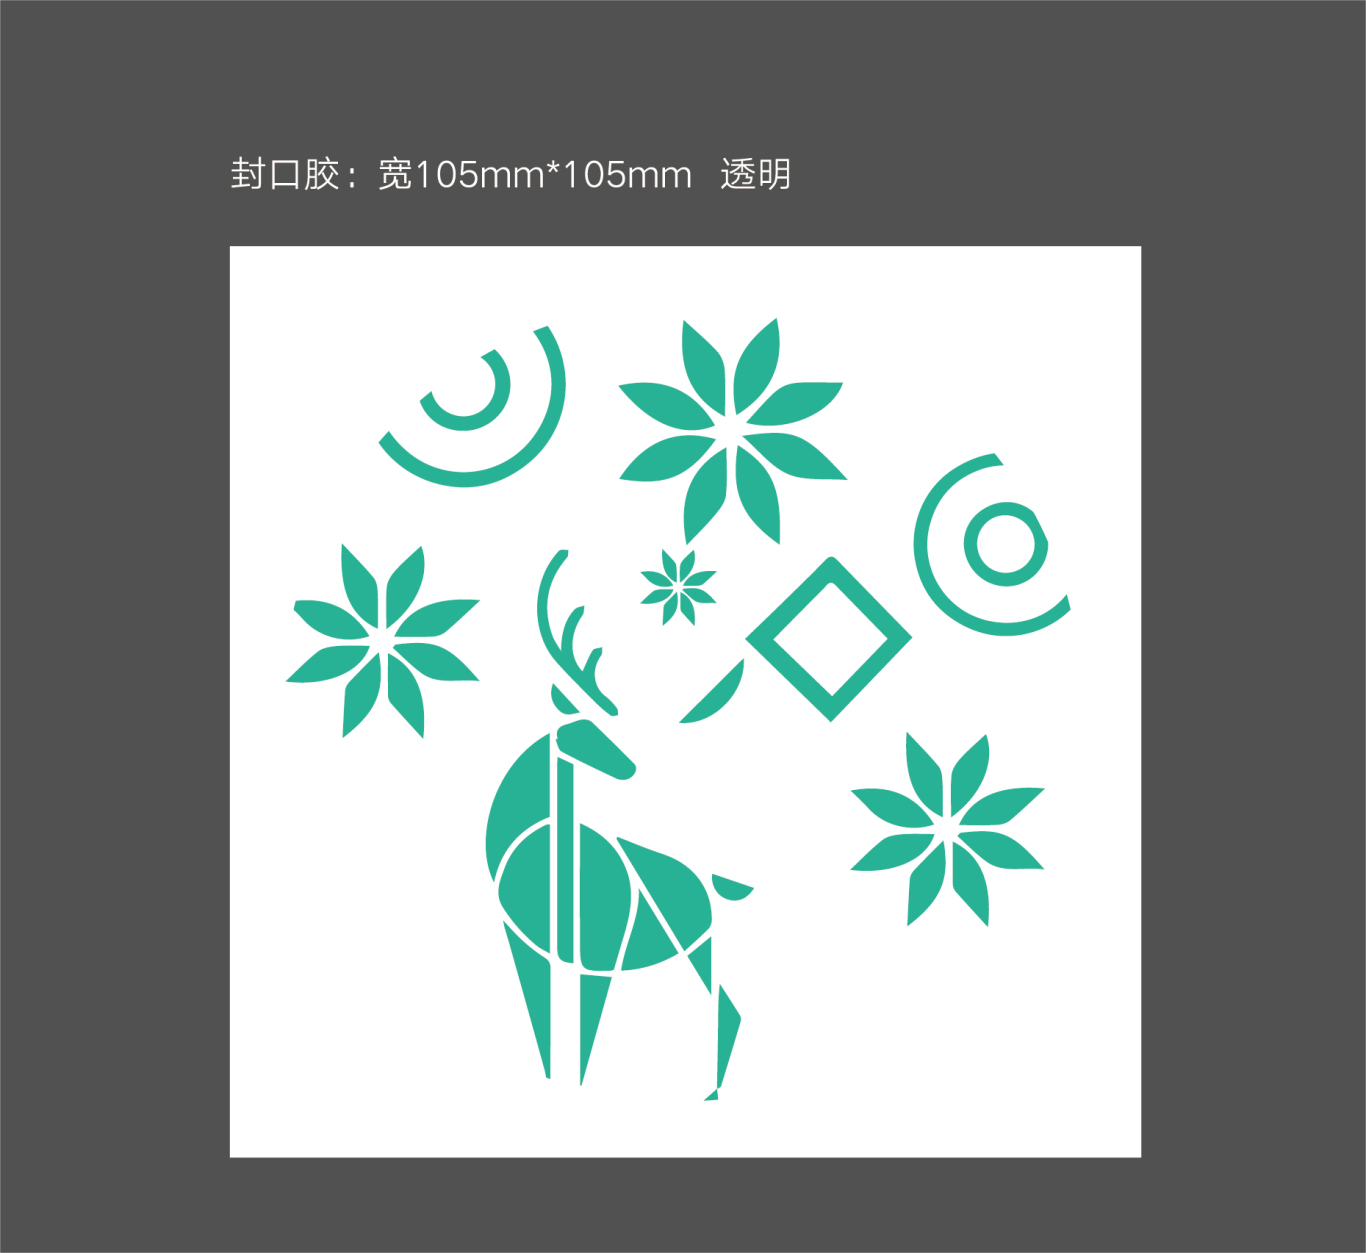 清舞飄雪茶飲 logo設計及吉祥物設計圖14